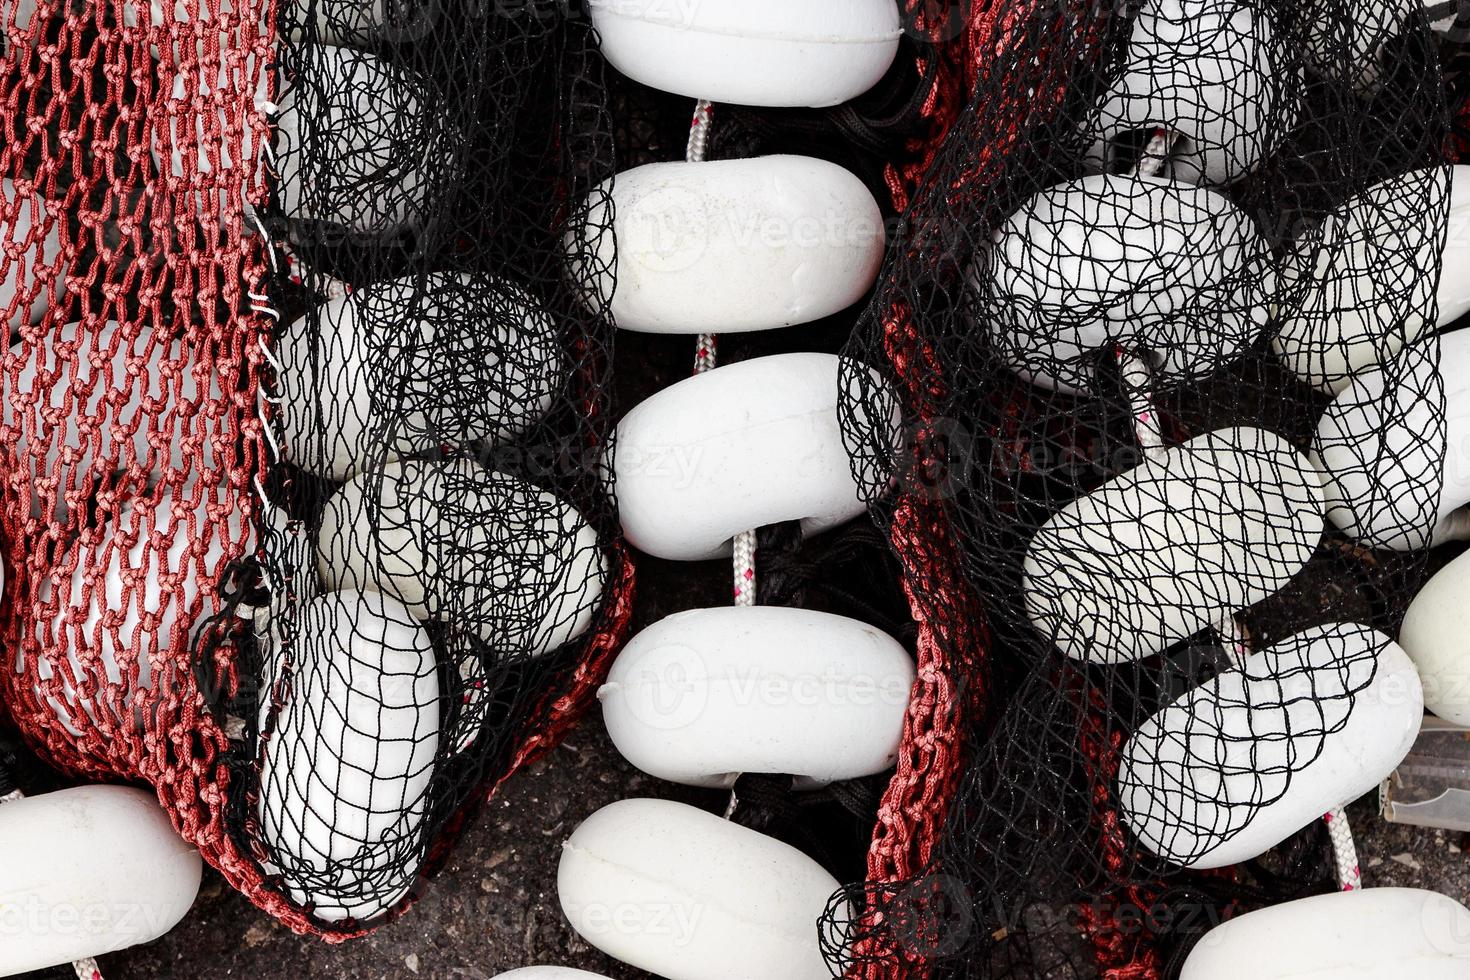 rede de pesca preta e vermelha com rolhas brancas no porto de santona, cantábria, espanha. imagem horizontal. foto